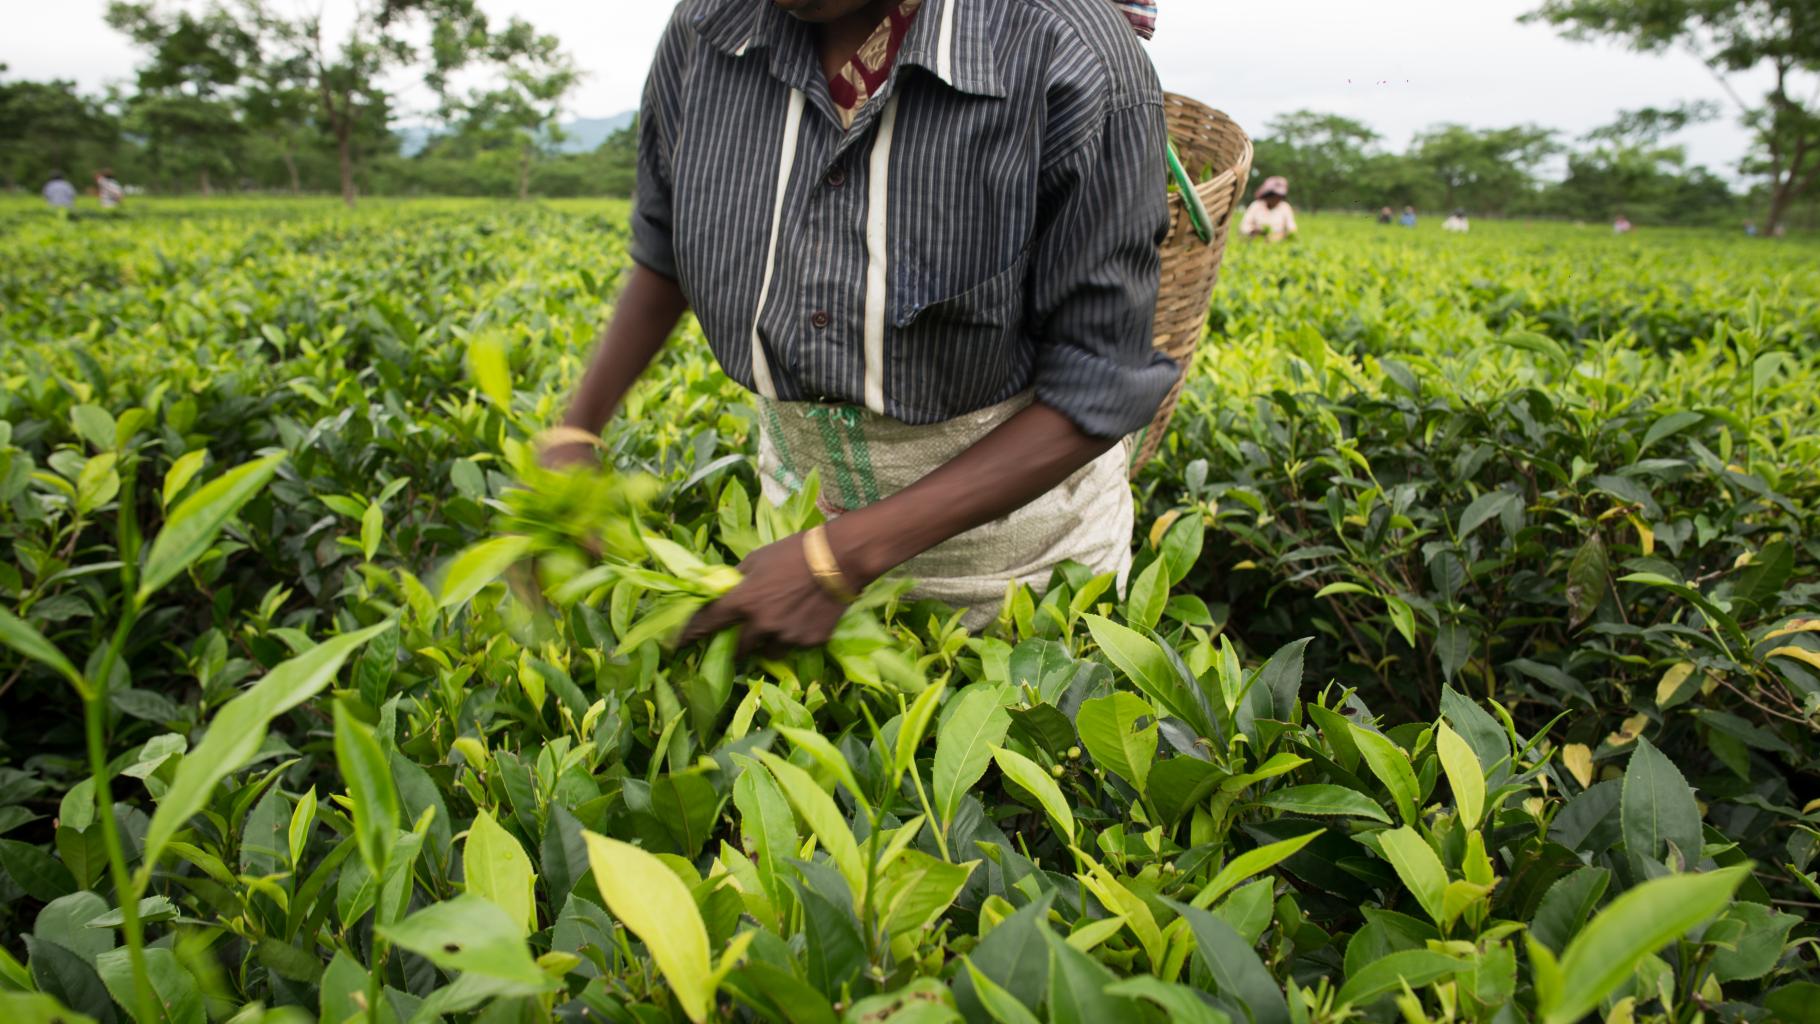 Man sieht den Oberkörper einer Person beim Pflücken von Teepflanzen. Sie trägt einen Korb auf dem Rücken, sowie ein Hemd aus Leinen.